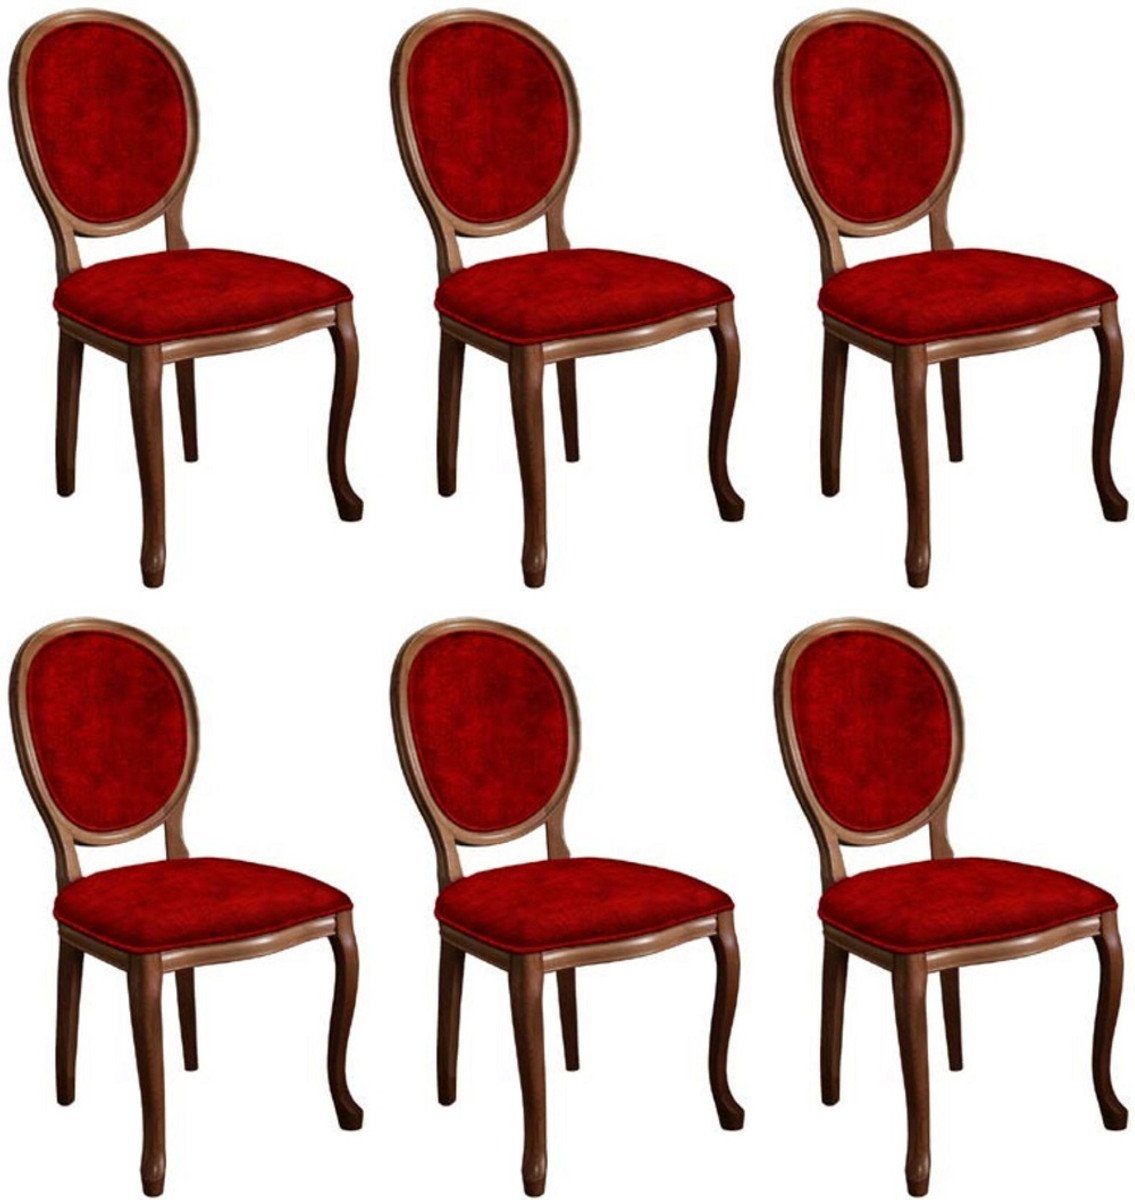 Casa Padrino - Esszimmerstuhl Küchen 6 Barock Bordeauxrot - Möbel im Stühle Set Esszimmer Braun Barockstil / Handgefertigte Esszimmerstuhl Barock